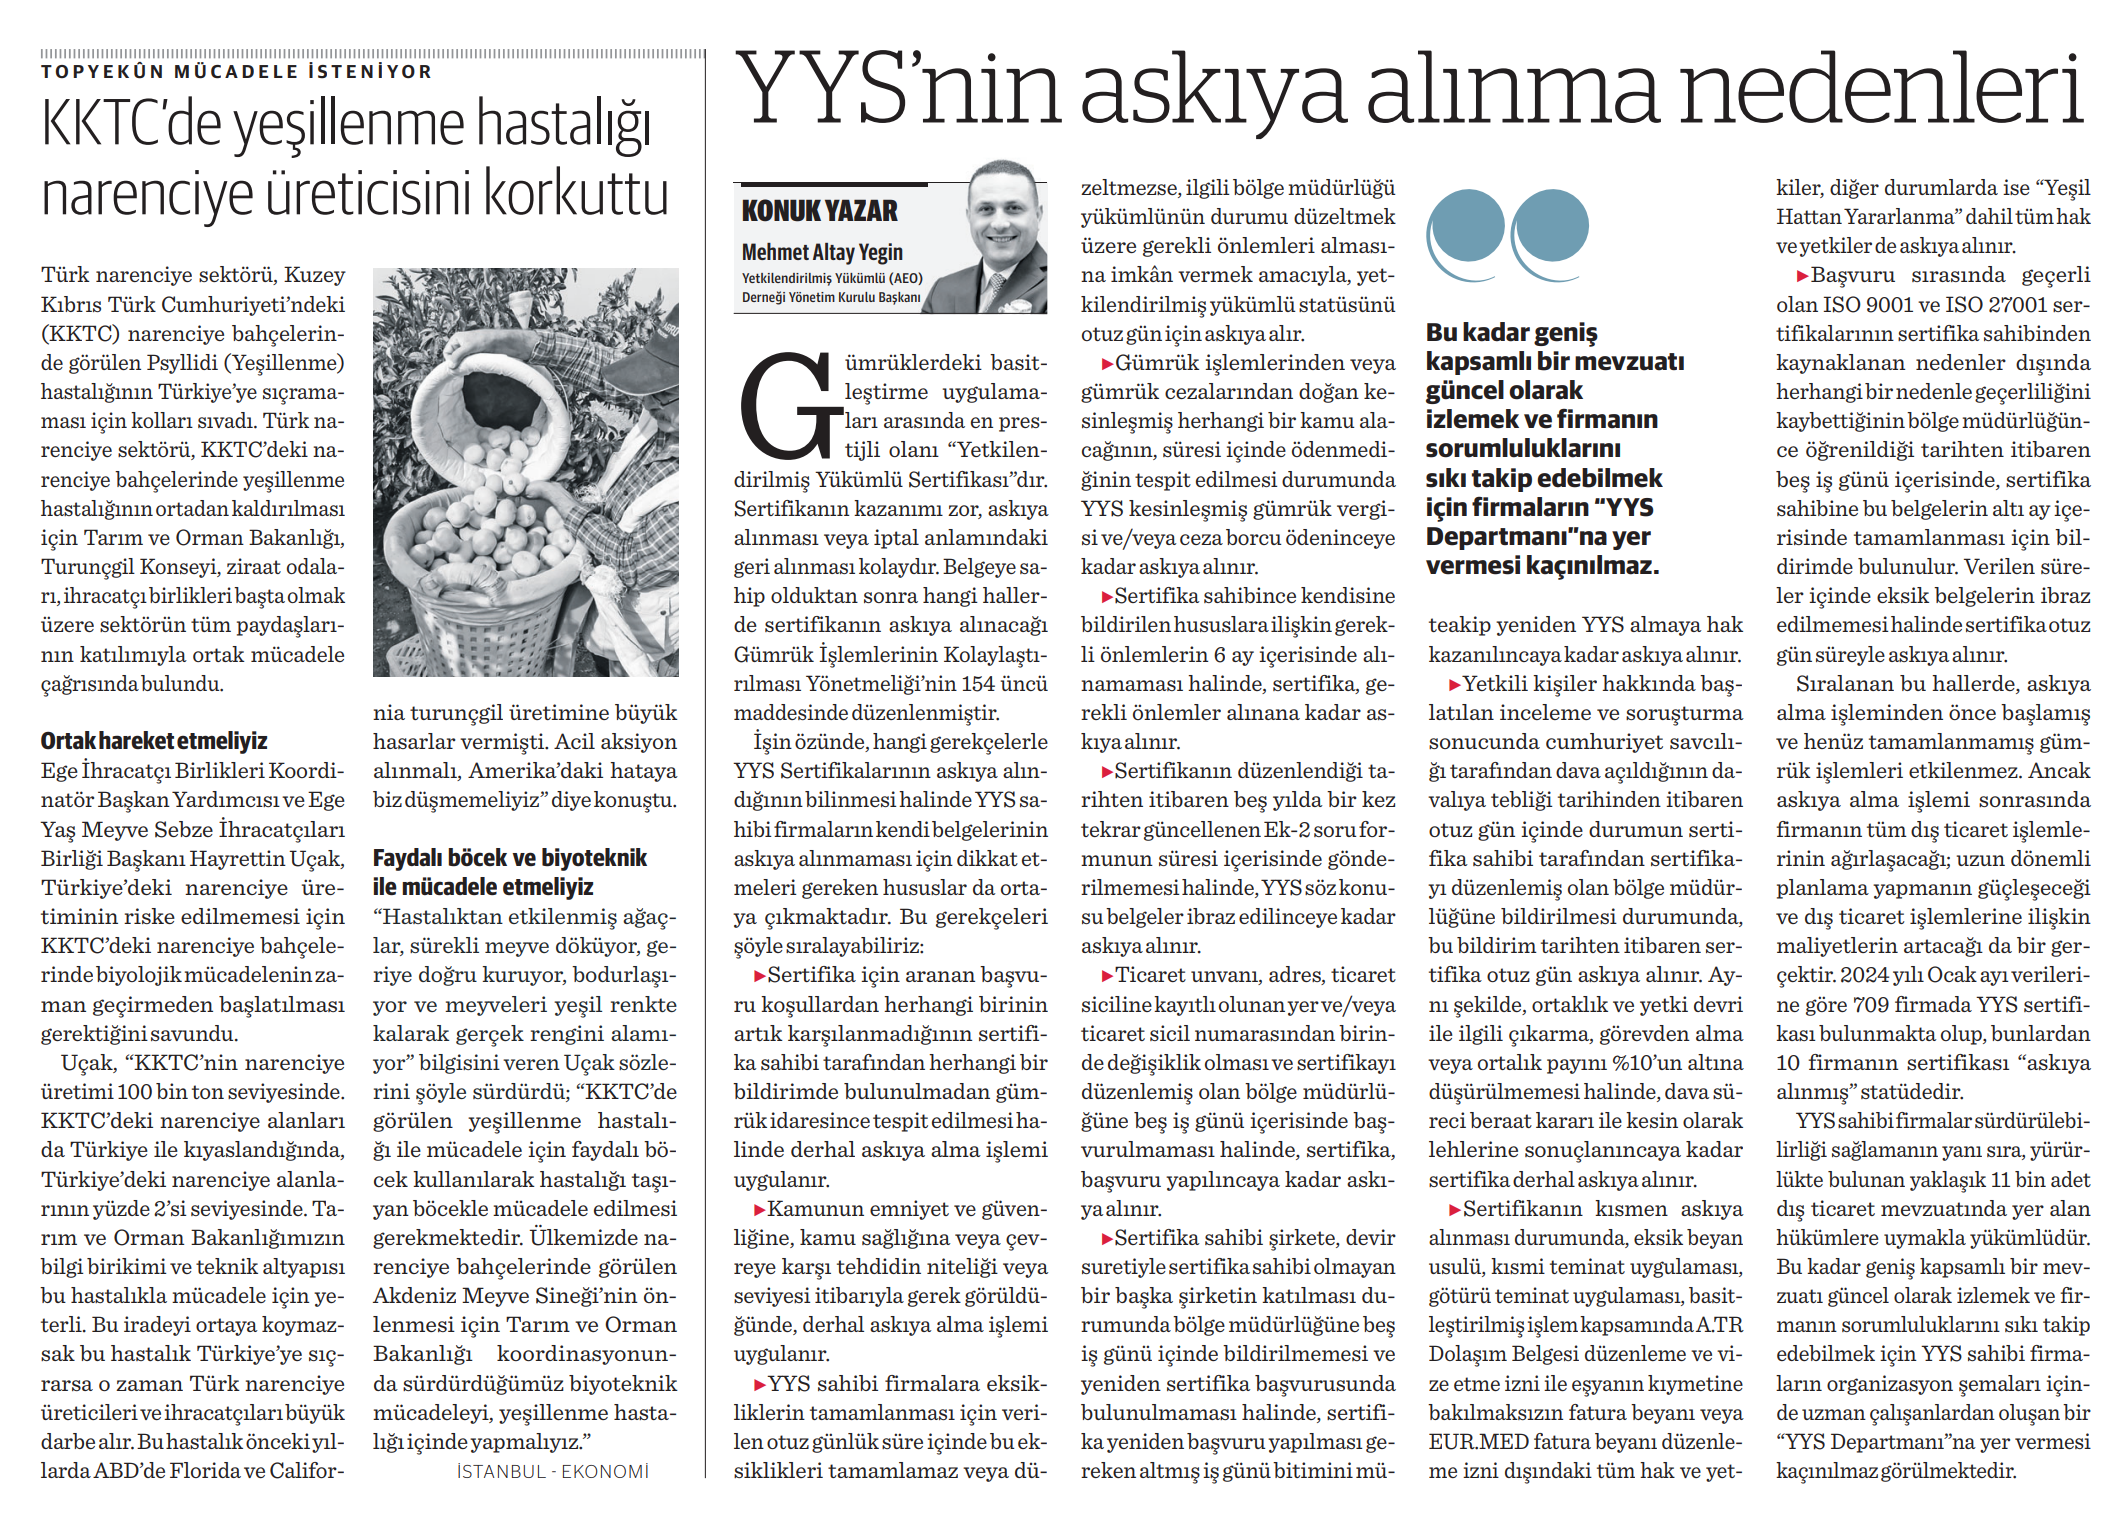 Yönetim Kurulu Başkanımız Mehmet Altay YEGİN'in YYS’nin askıya alınma nedenleri başlıklı yazısı "Nasıl Bir Ekonomi" gazetesinde yayımlandı